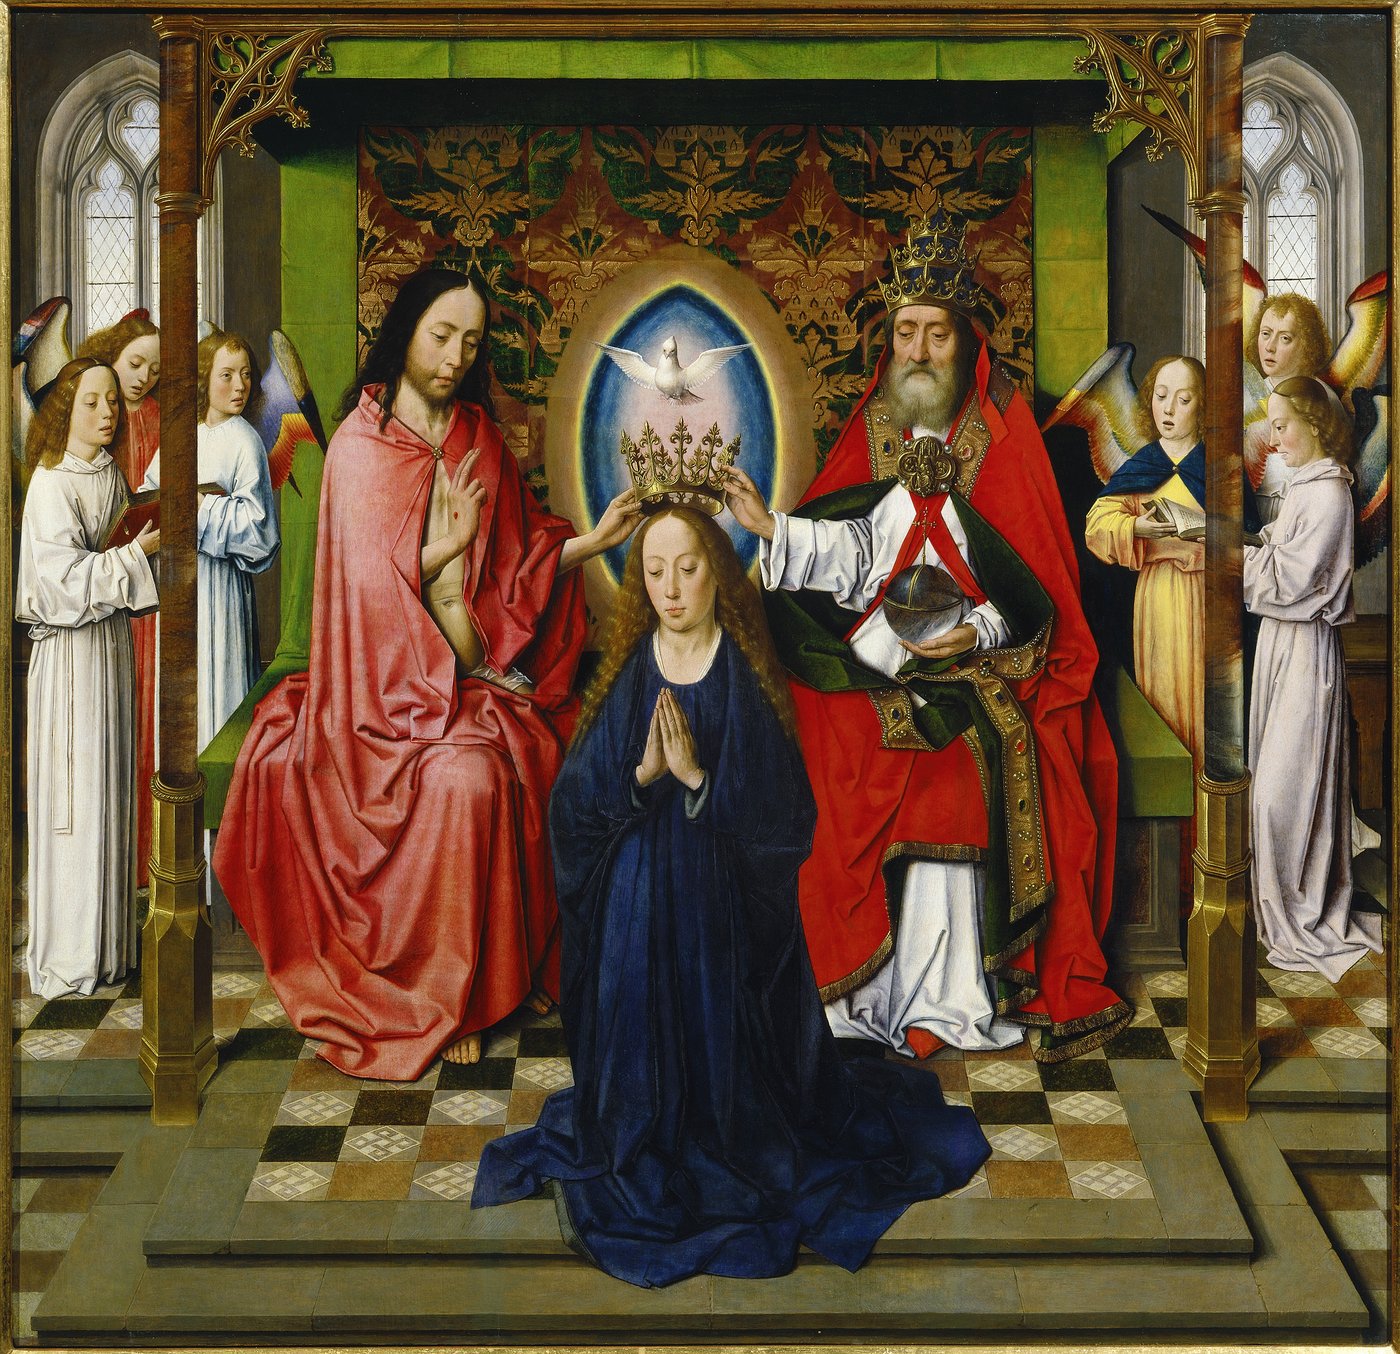 historisches Gemälde, Darstellung der Marienkrönung, eine Frau mit langem Haar kniet unter einem Baldachin über ihr die Krone und weiße Taube, links und rechts von ihr ein Priester und Jesus mit Segensgestus, im Hintergrund Engelsfiguren die im Chor singen